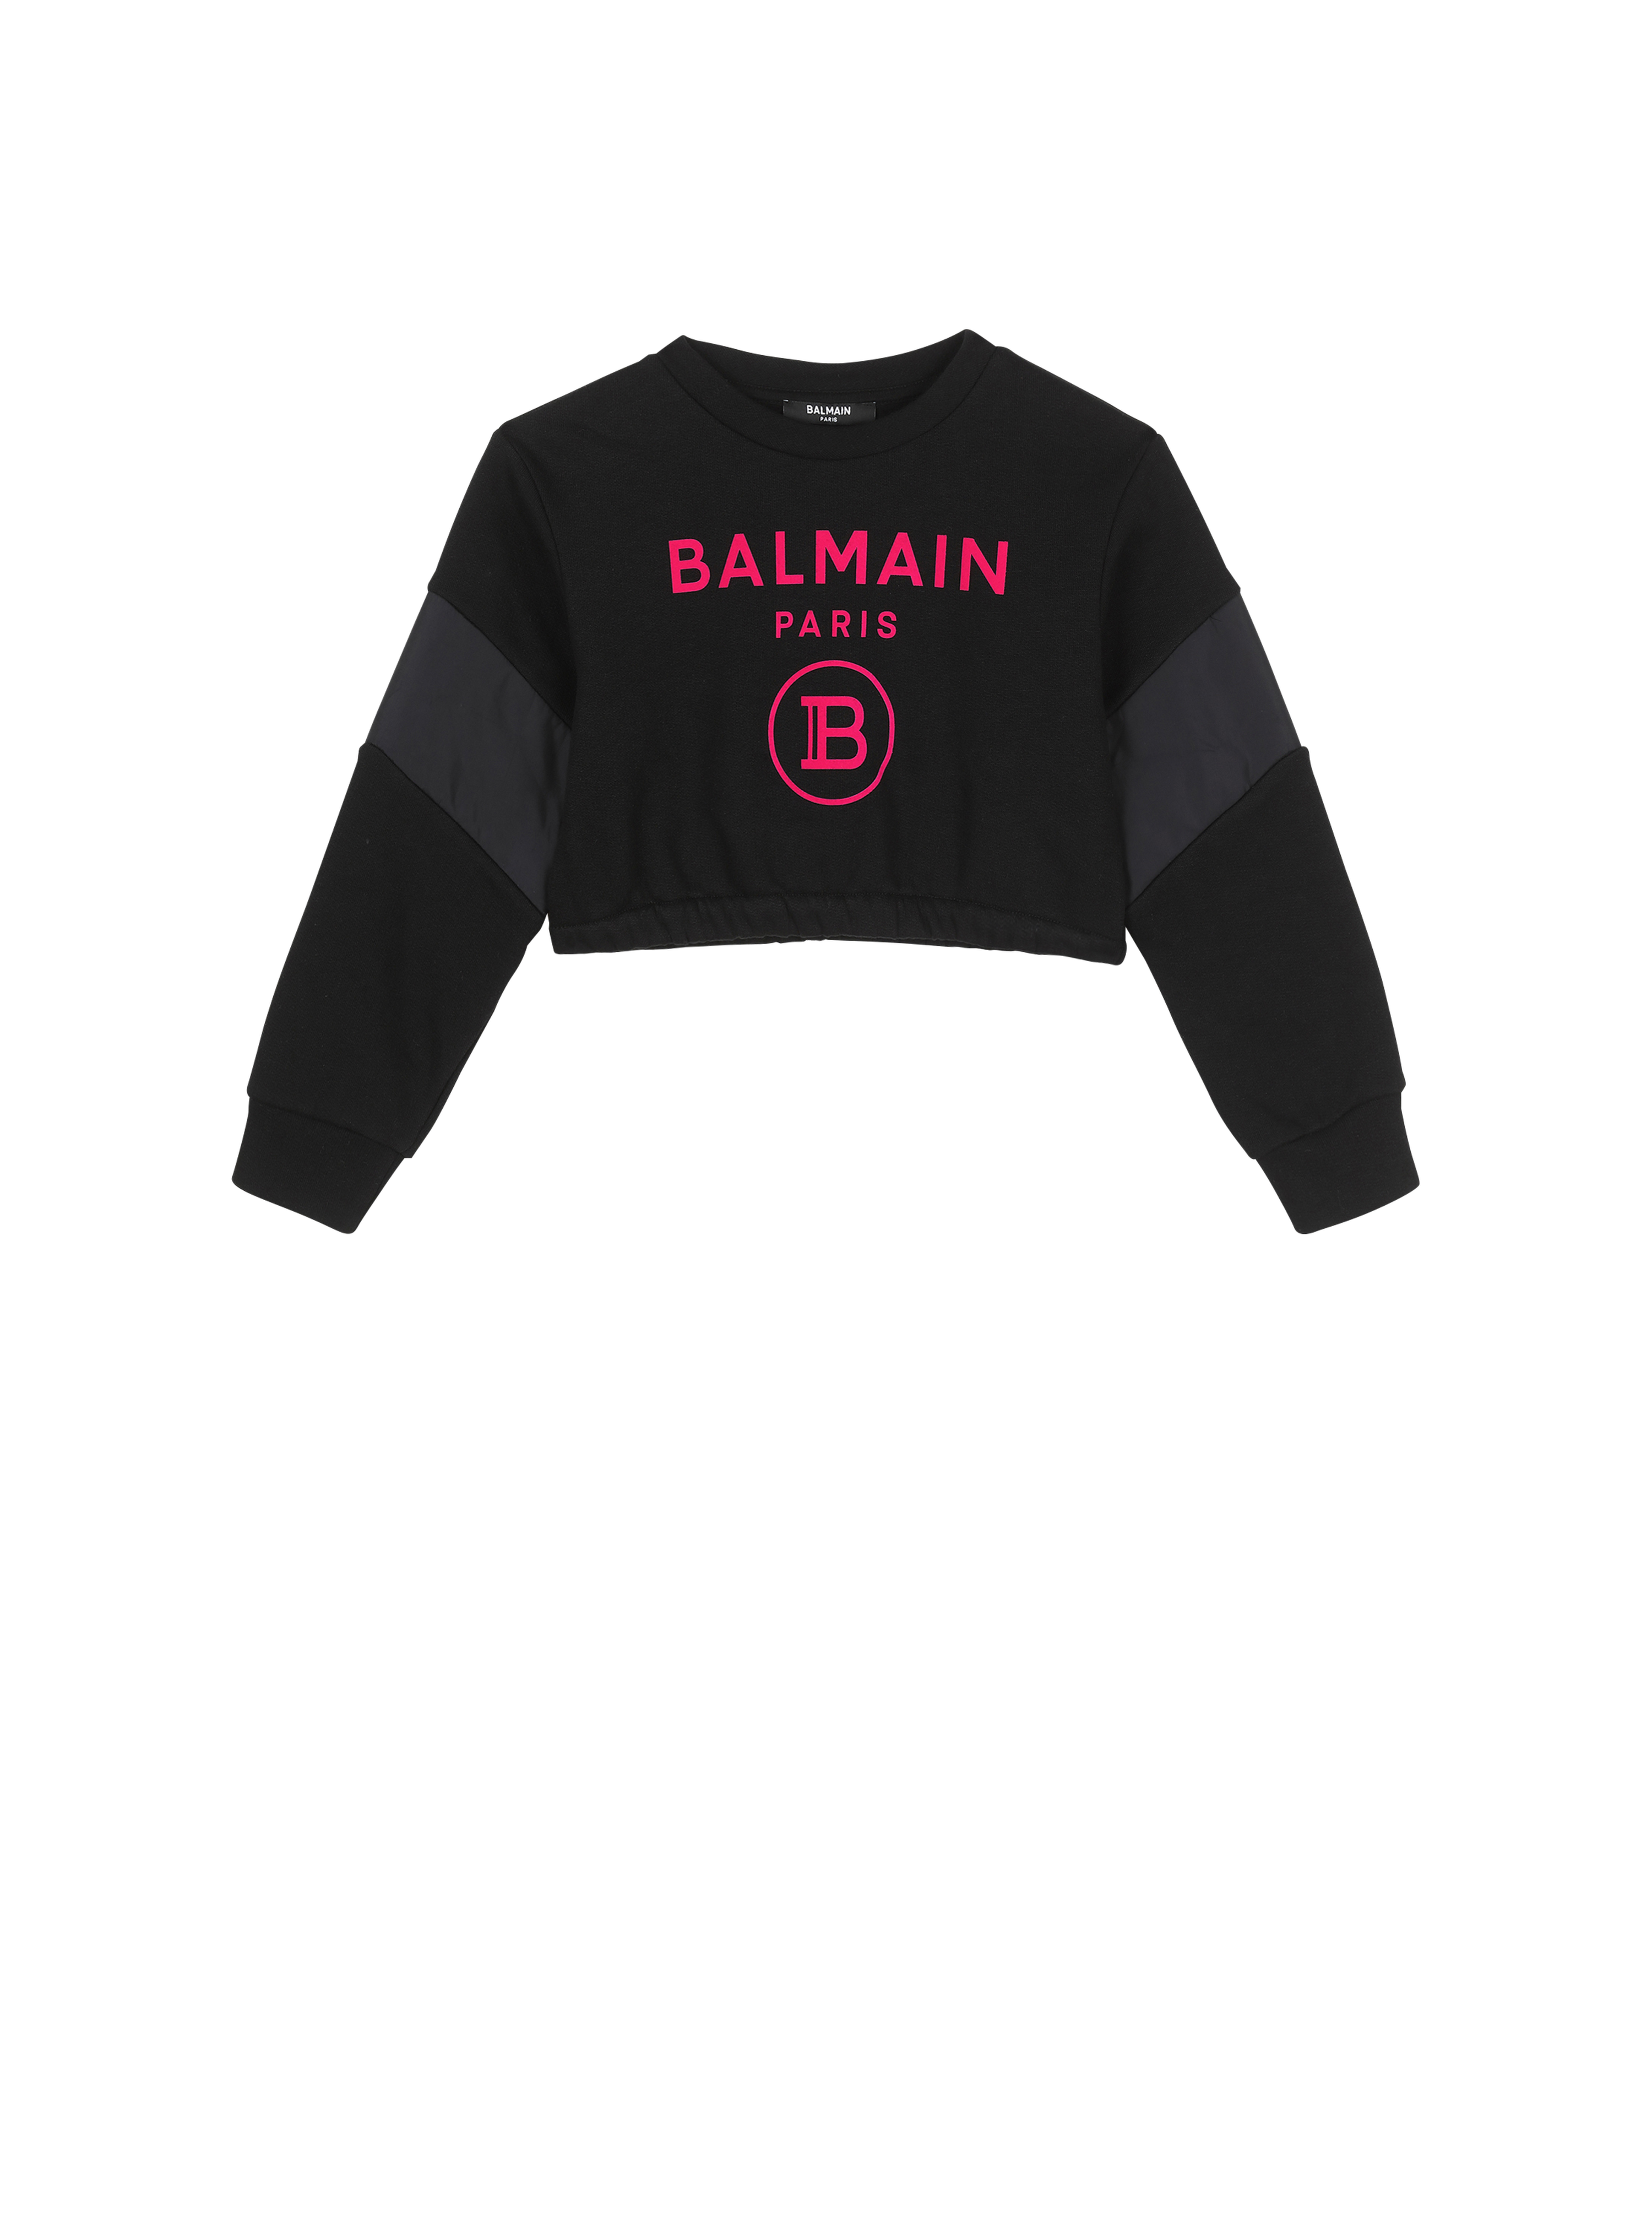 バルマンロゴ入りのコットン製セーター, 黒